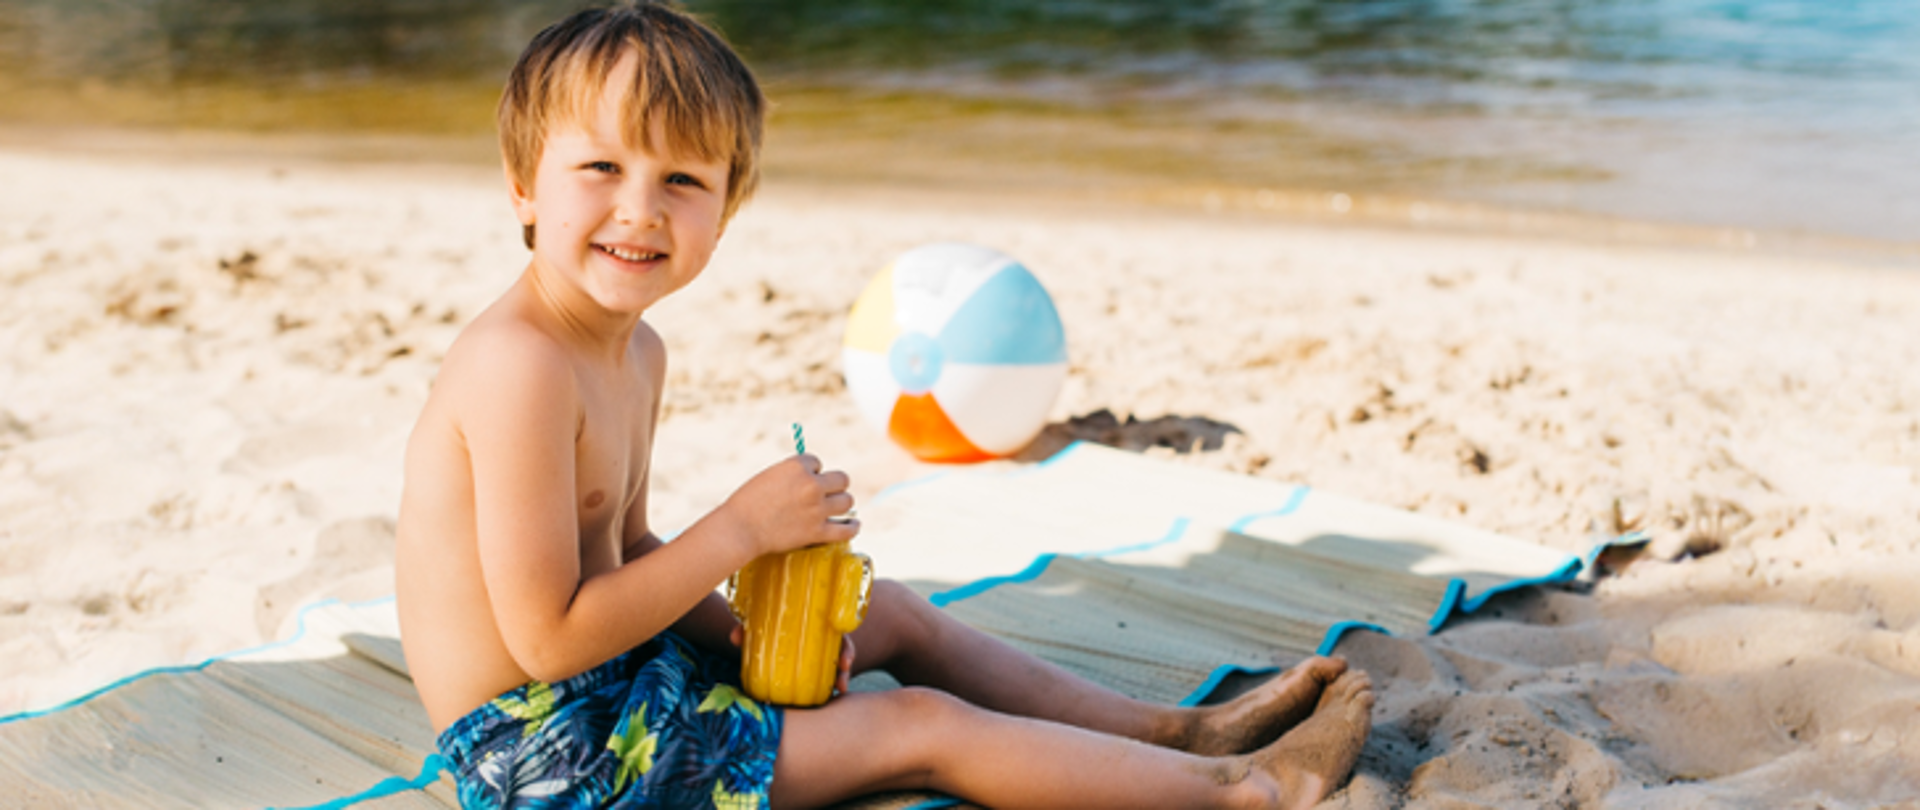 Chłopiec siedzi na plaży, na karimacie niedaleko jeziora